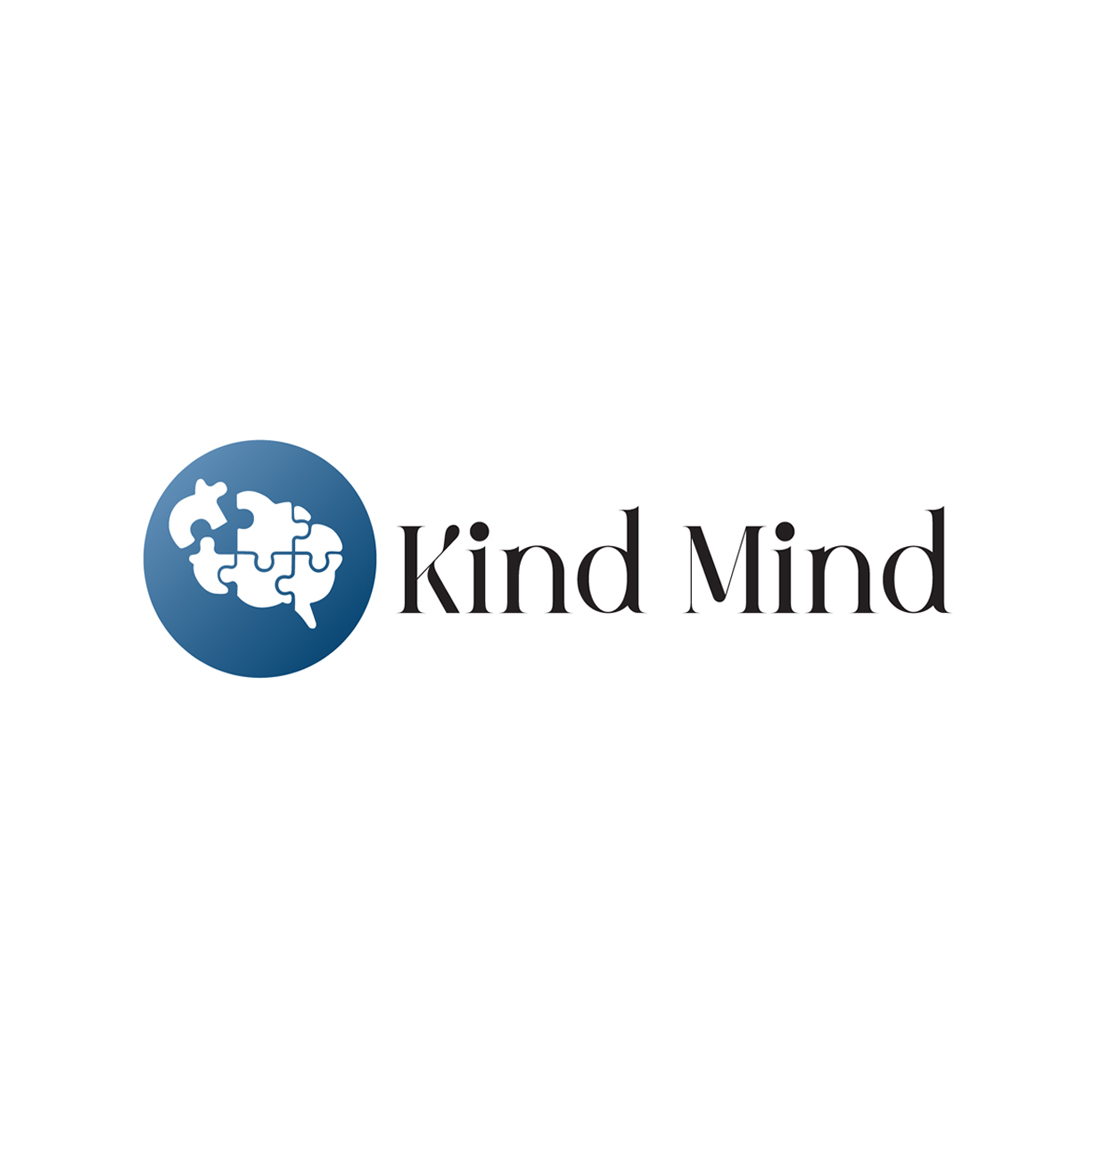 Kind Mind's logo